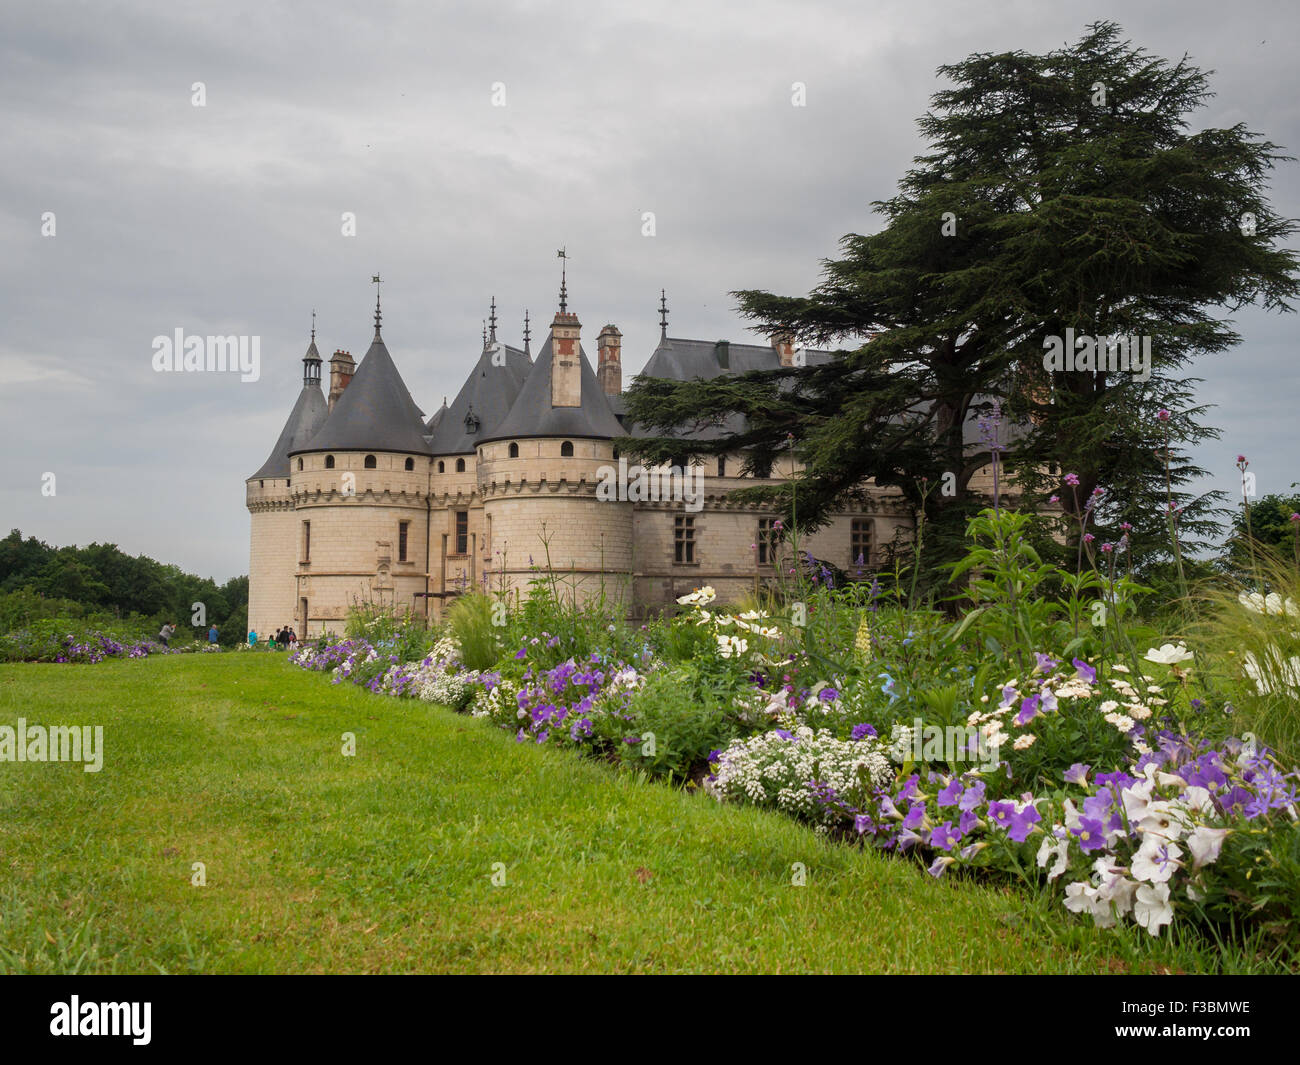 Chaumont-sur-Loire Chateau and garden Stock Photo